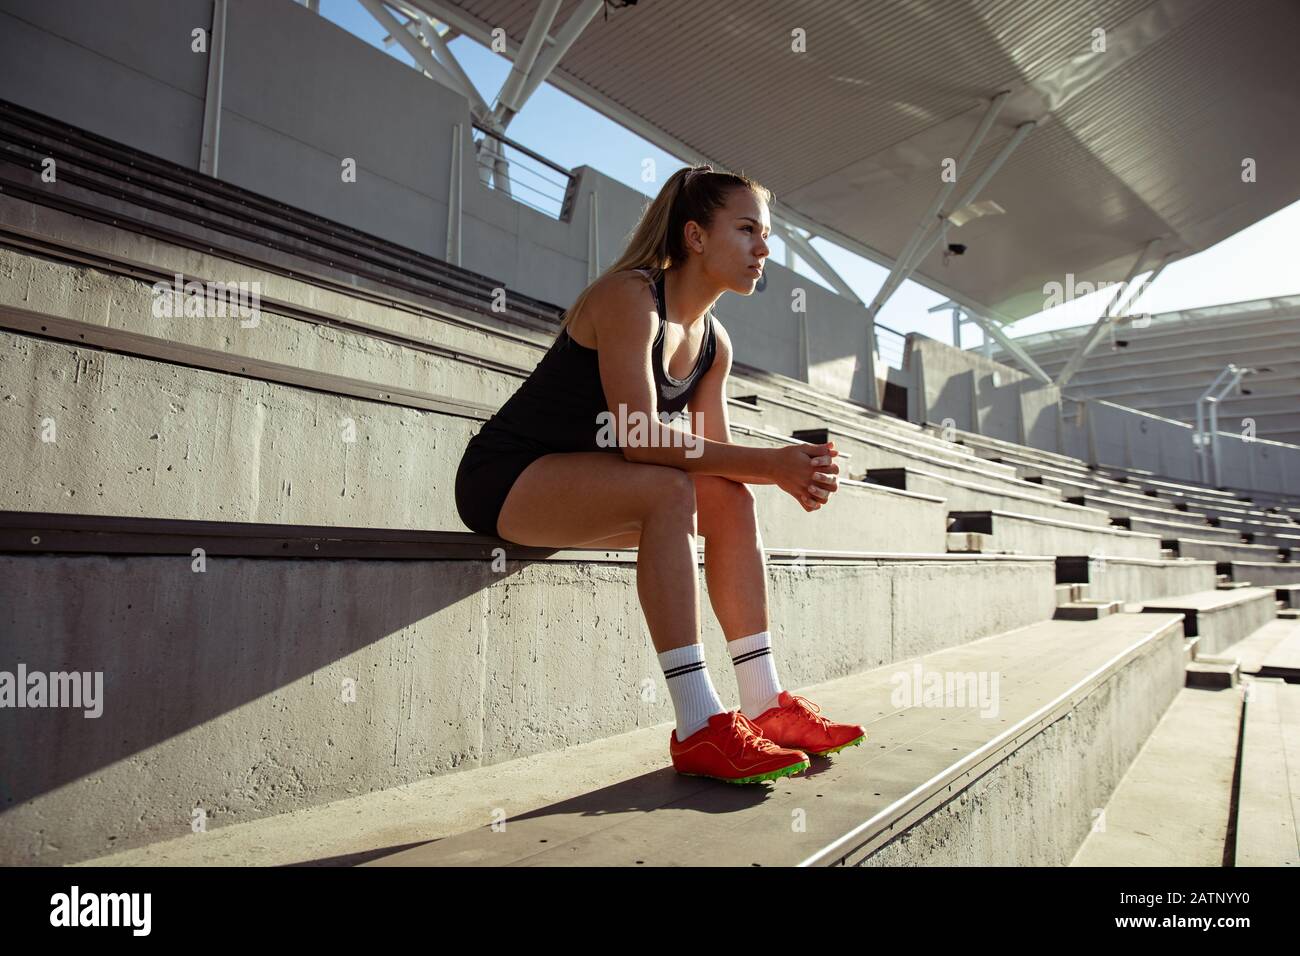 Athlete waiting at the stadium Stock Photo - Alamy